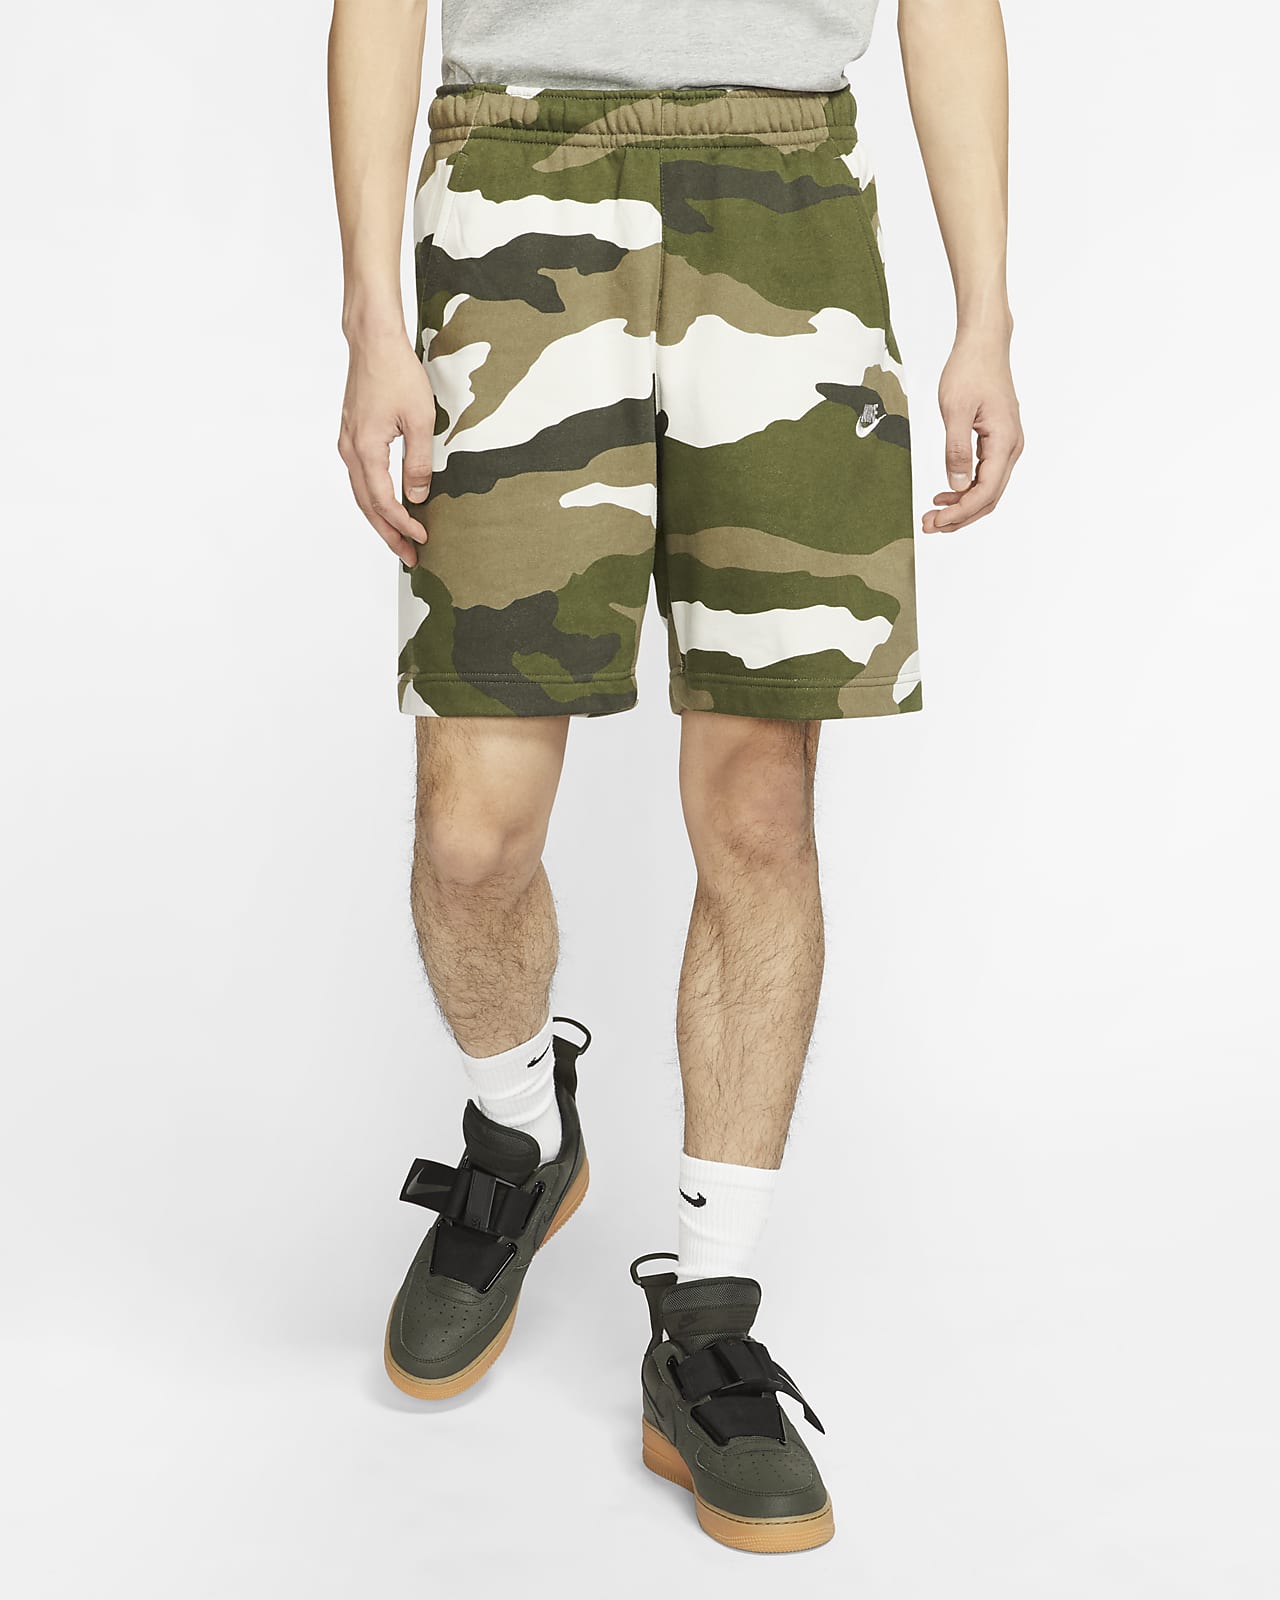 Buy nike green camo shorts> OFF-52%